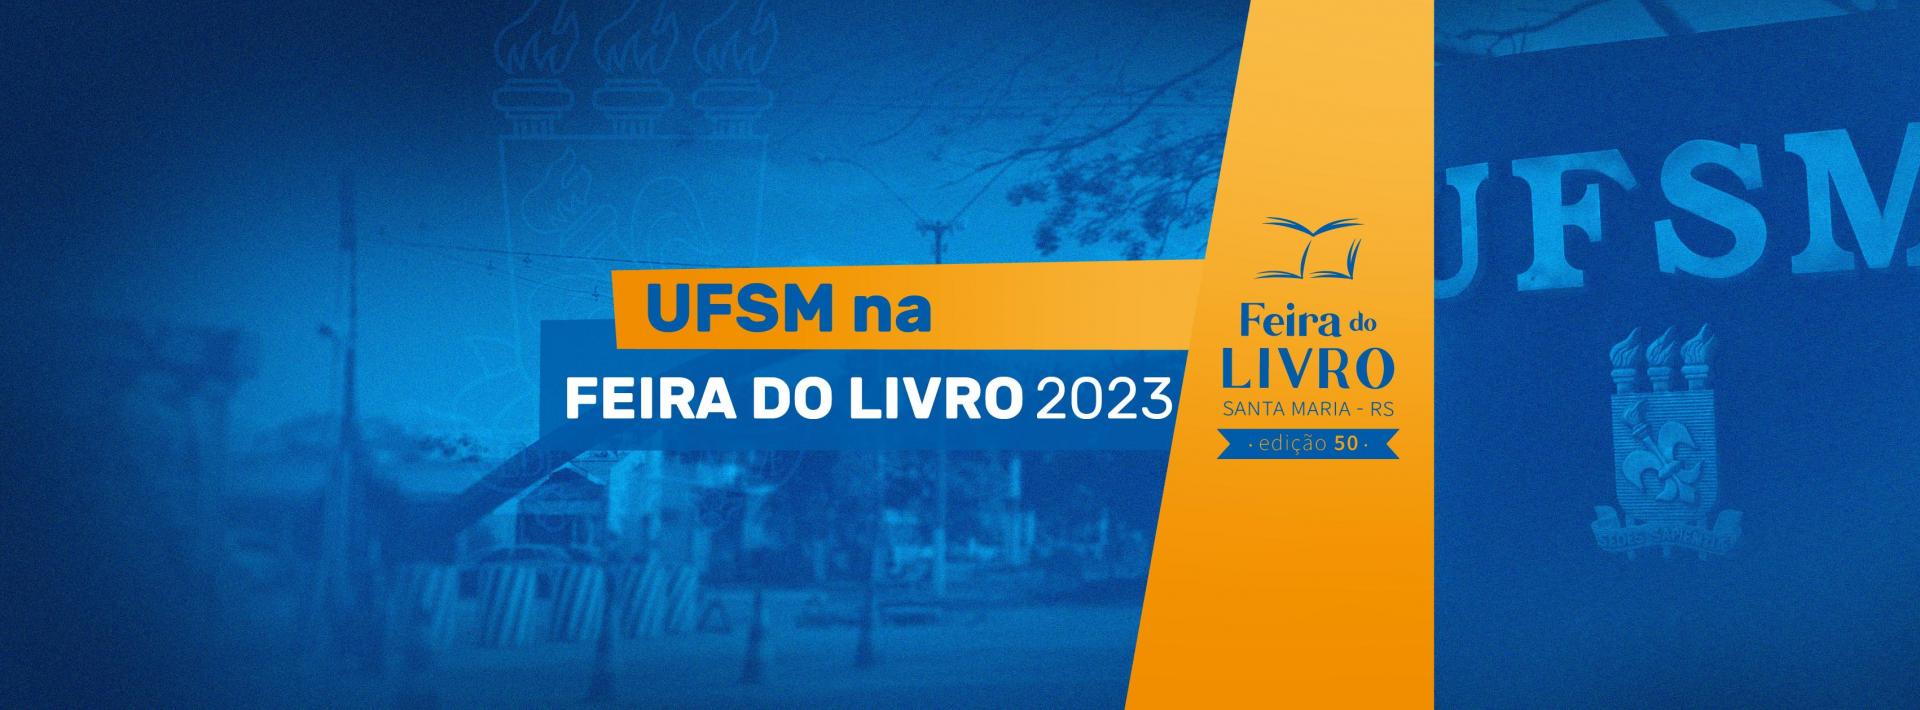 UFSM na Feira do Livro 2023. Banner azul com arco da UFSM ao fundo. Detalhe em laranja com a marca Feira do Livro Santa Maria